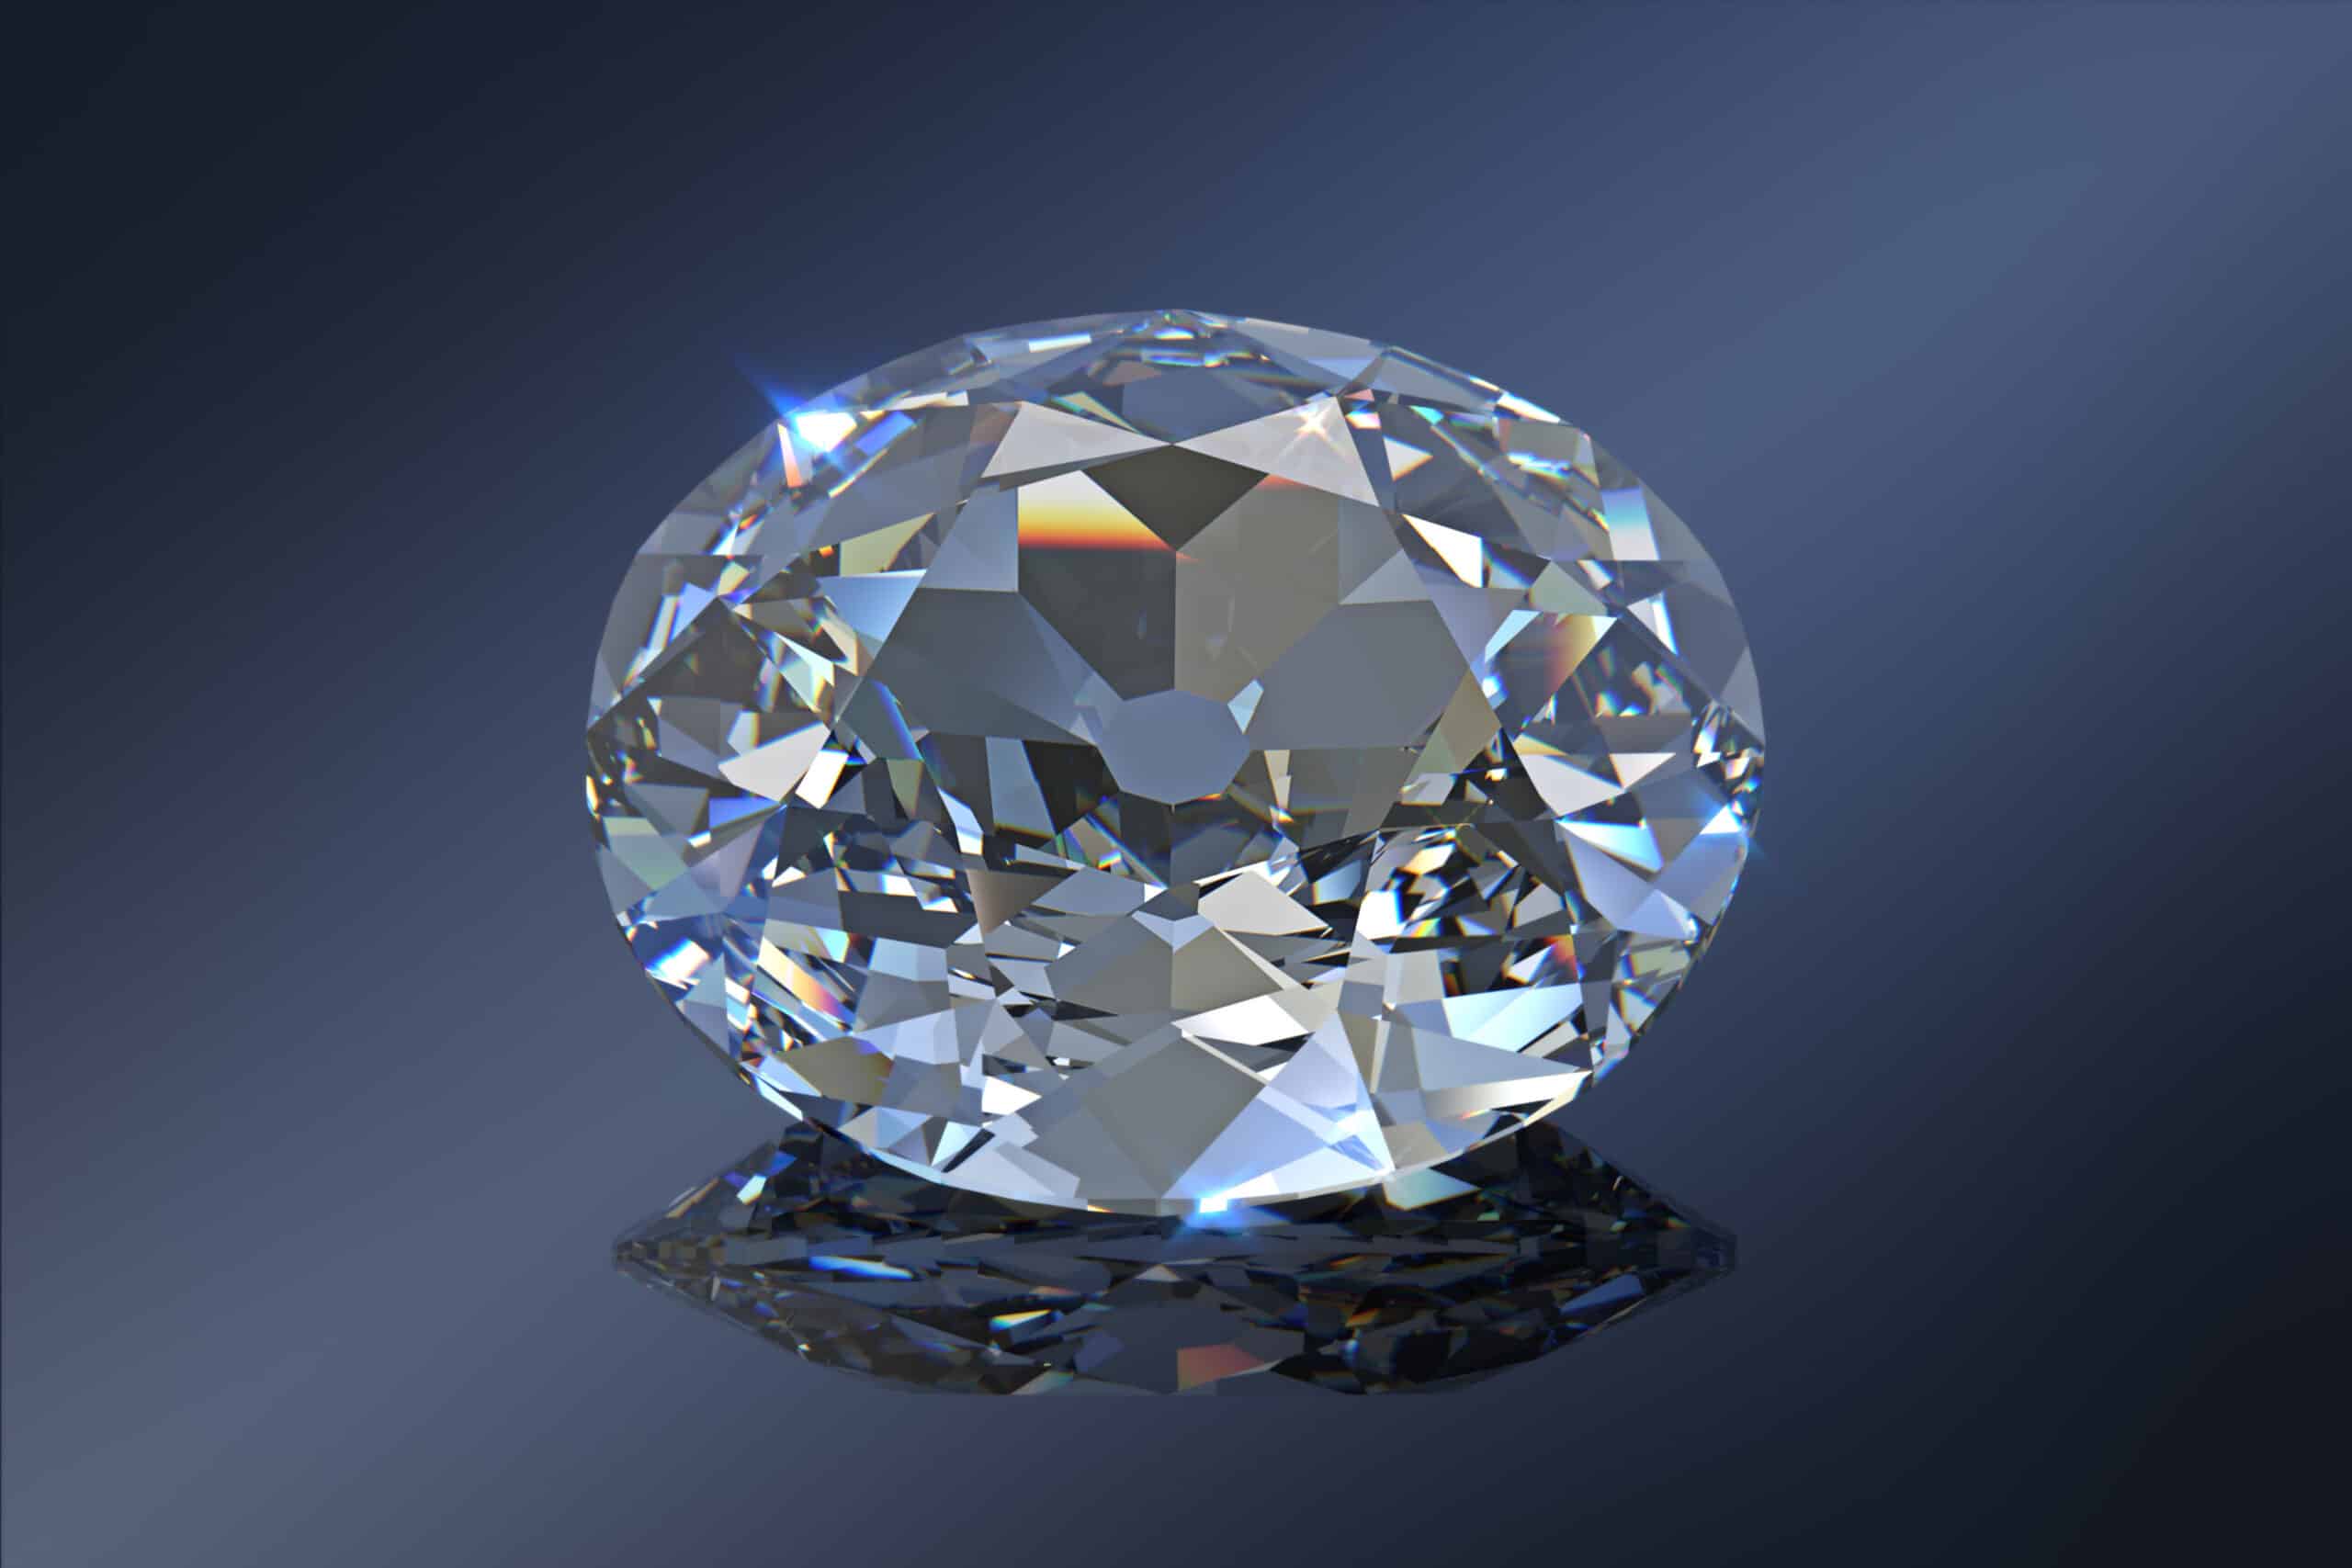 Krvava istorija i megalomanija: Zašto je dijamant sa krune ponovo aktuelan u Indiji nakon smrti kraljice Elizabete Druge? 2